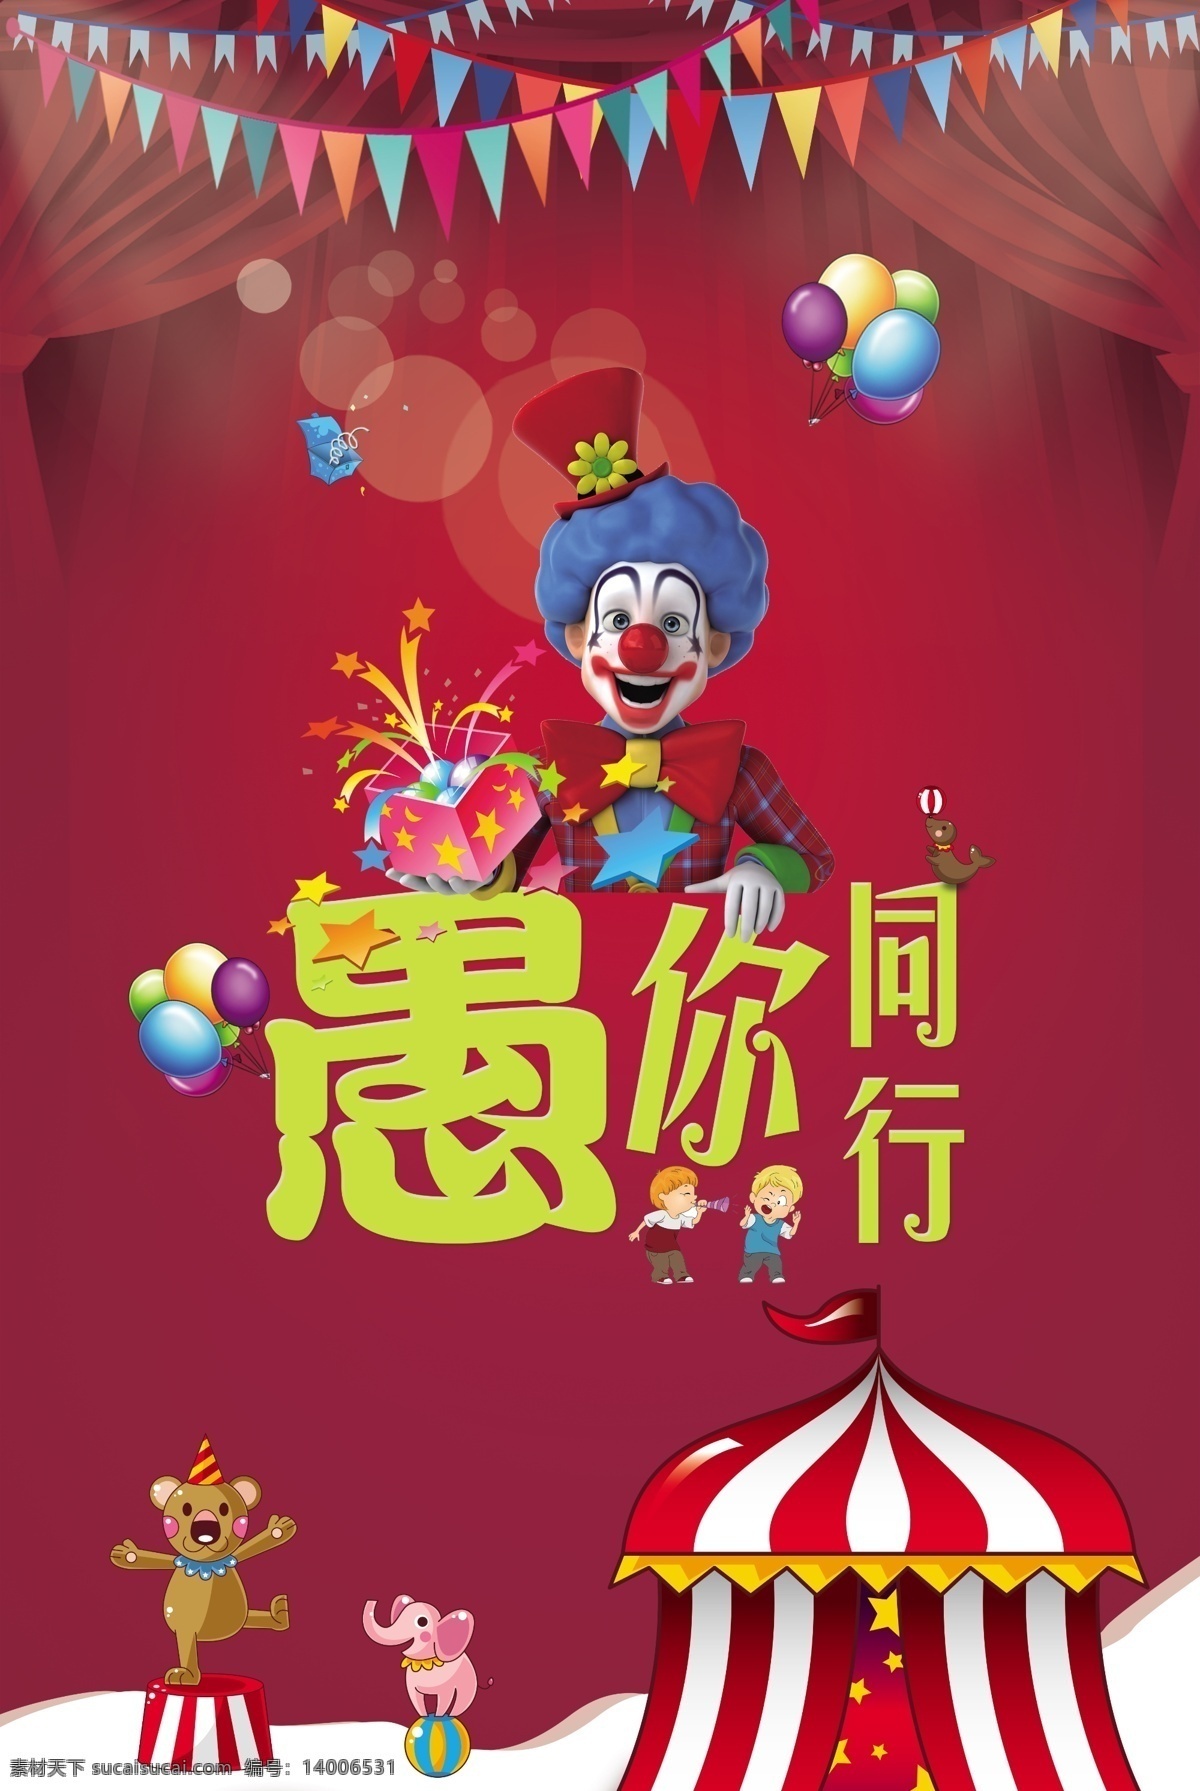 愚人节海报 愚你同在 愚人节 小海狮 游乐园 红色幕布 小丑气球 平面设计 室外广告设计